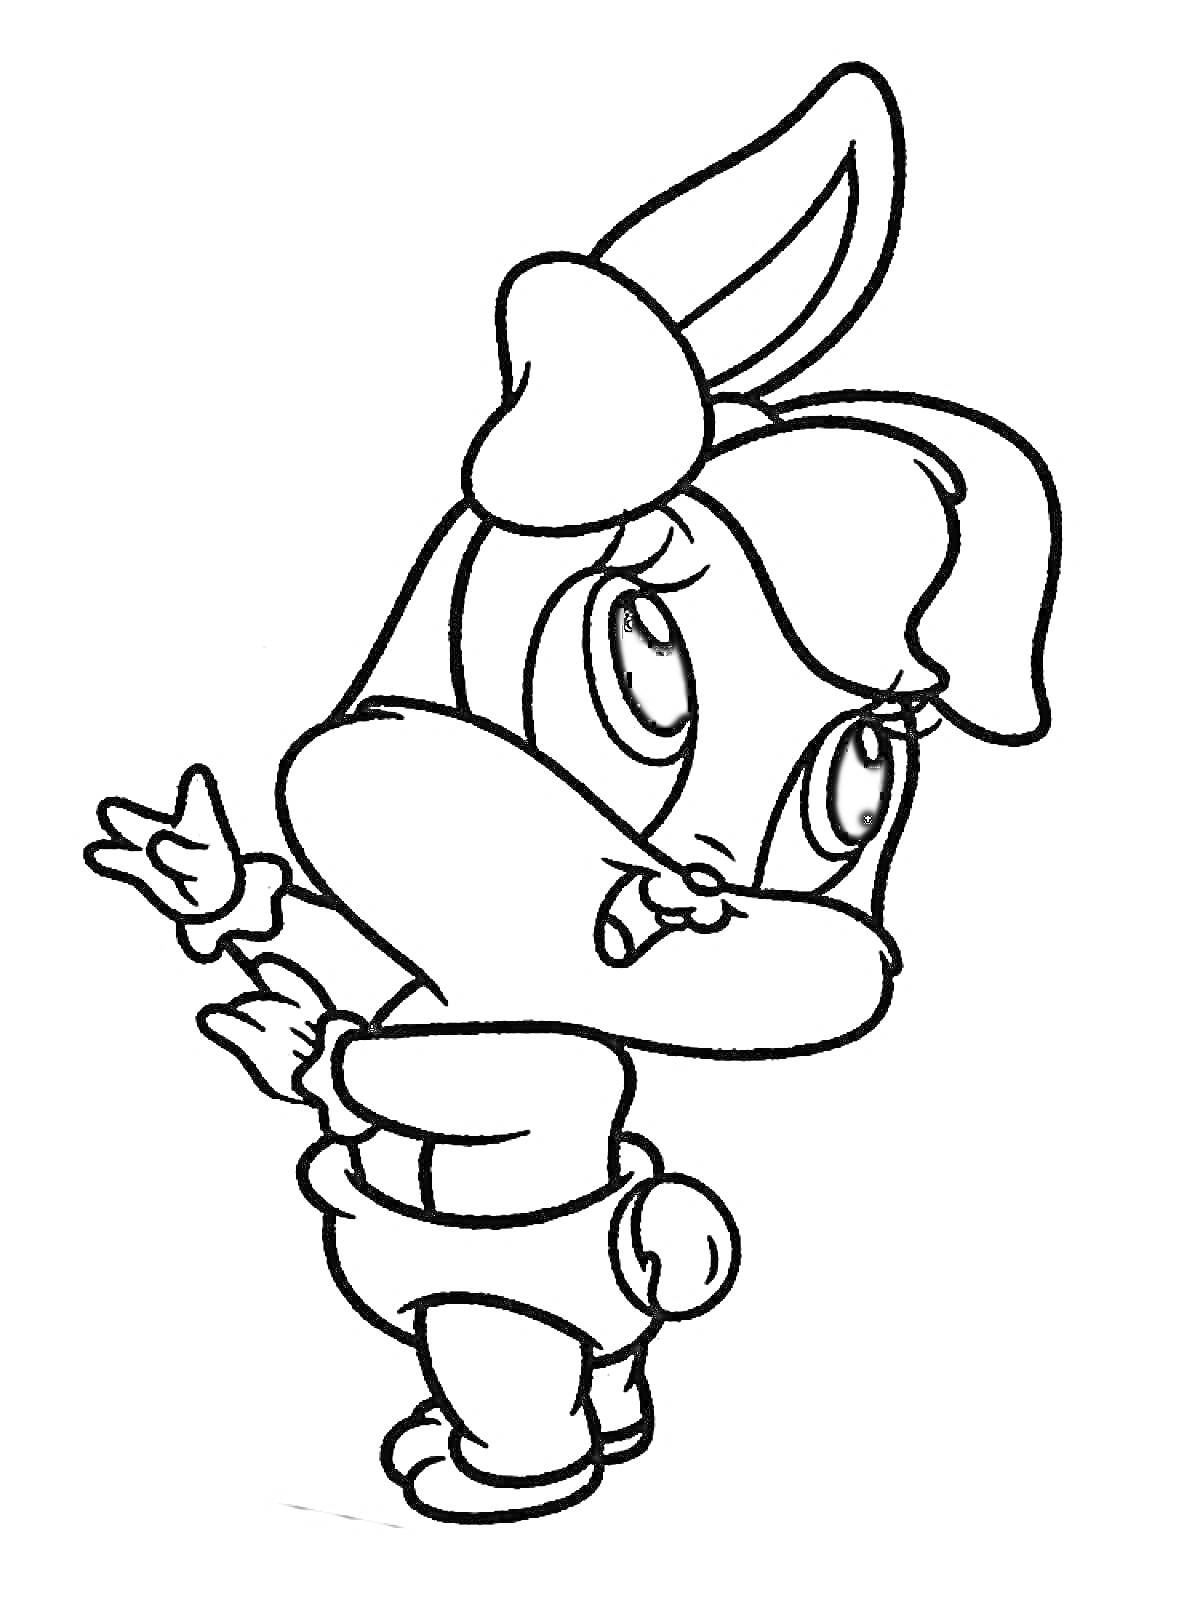  Мультяшный заяц в одежде с бантиком на голове